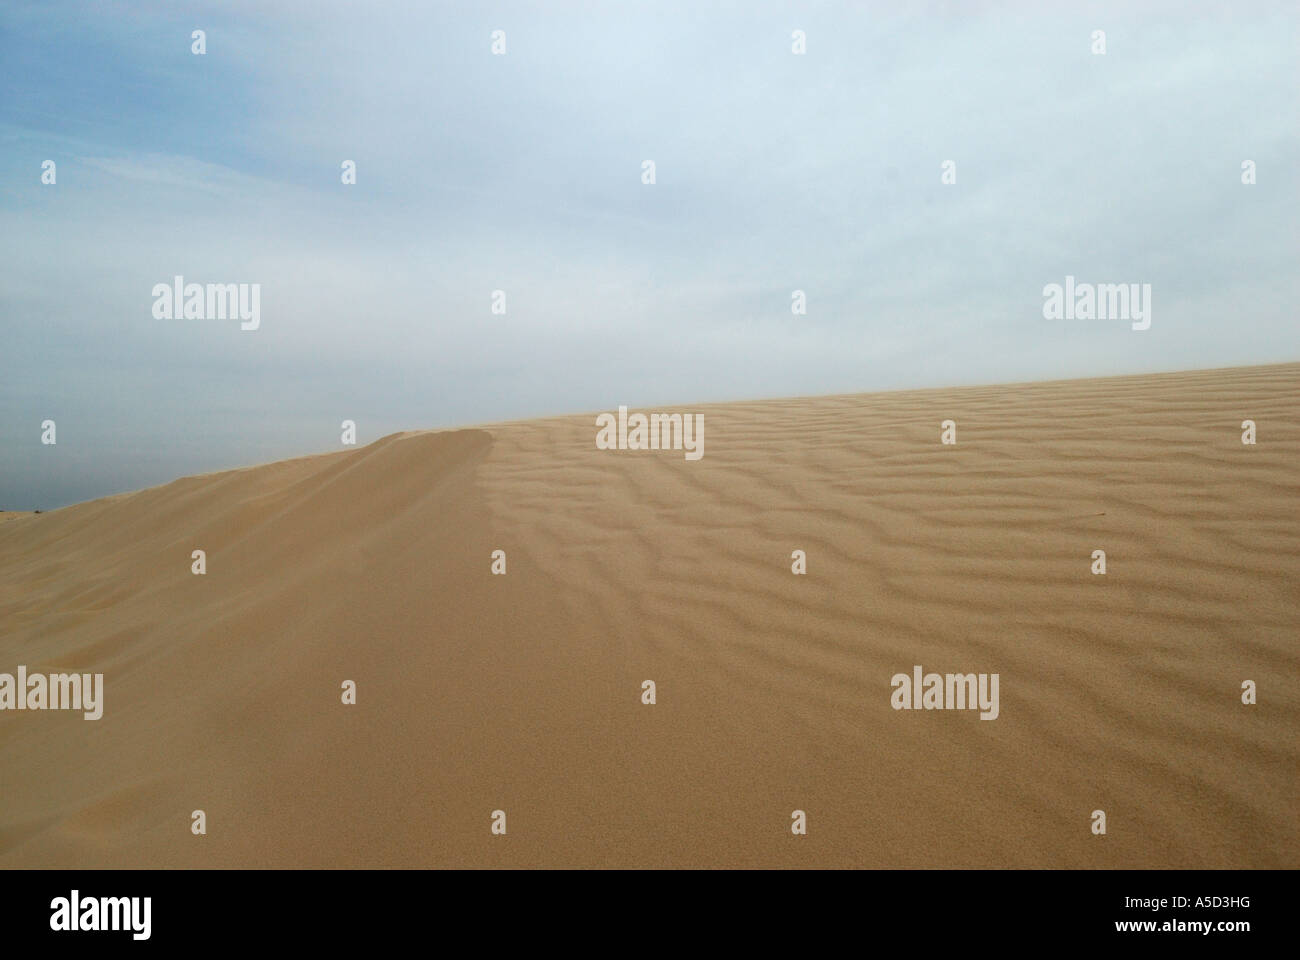 Monahans Sandhills dunes in West Texas Stock Photo - Alamy